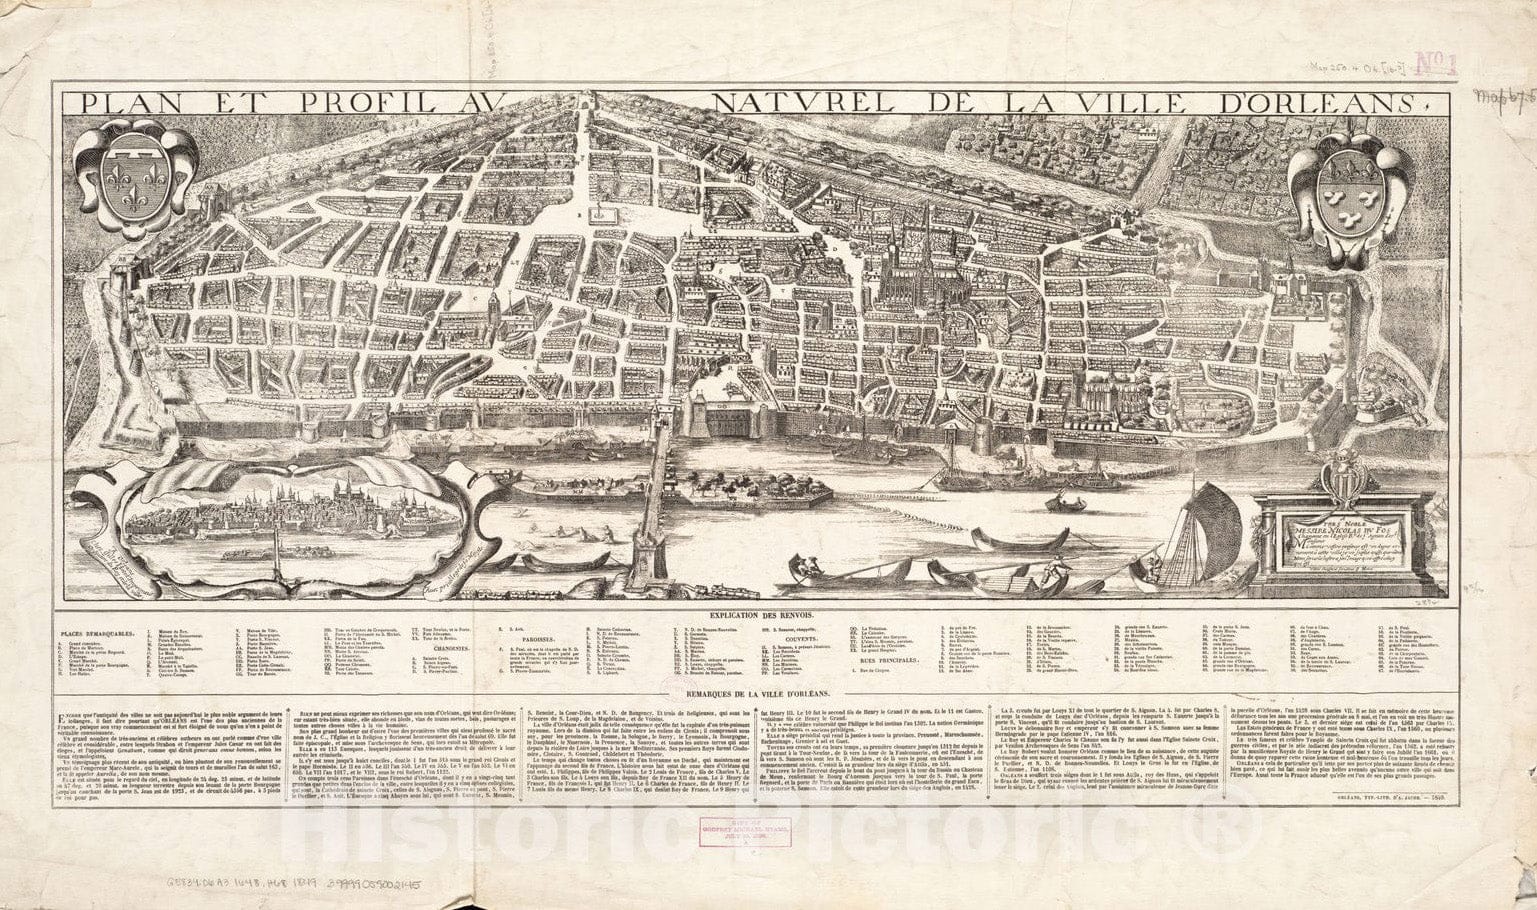 Historical Map, 1849 Plan et profil au Naturel de la Ville d'Orleans, Vintage Wall Art